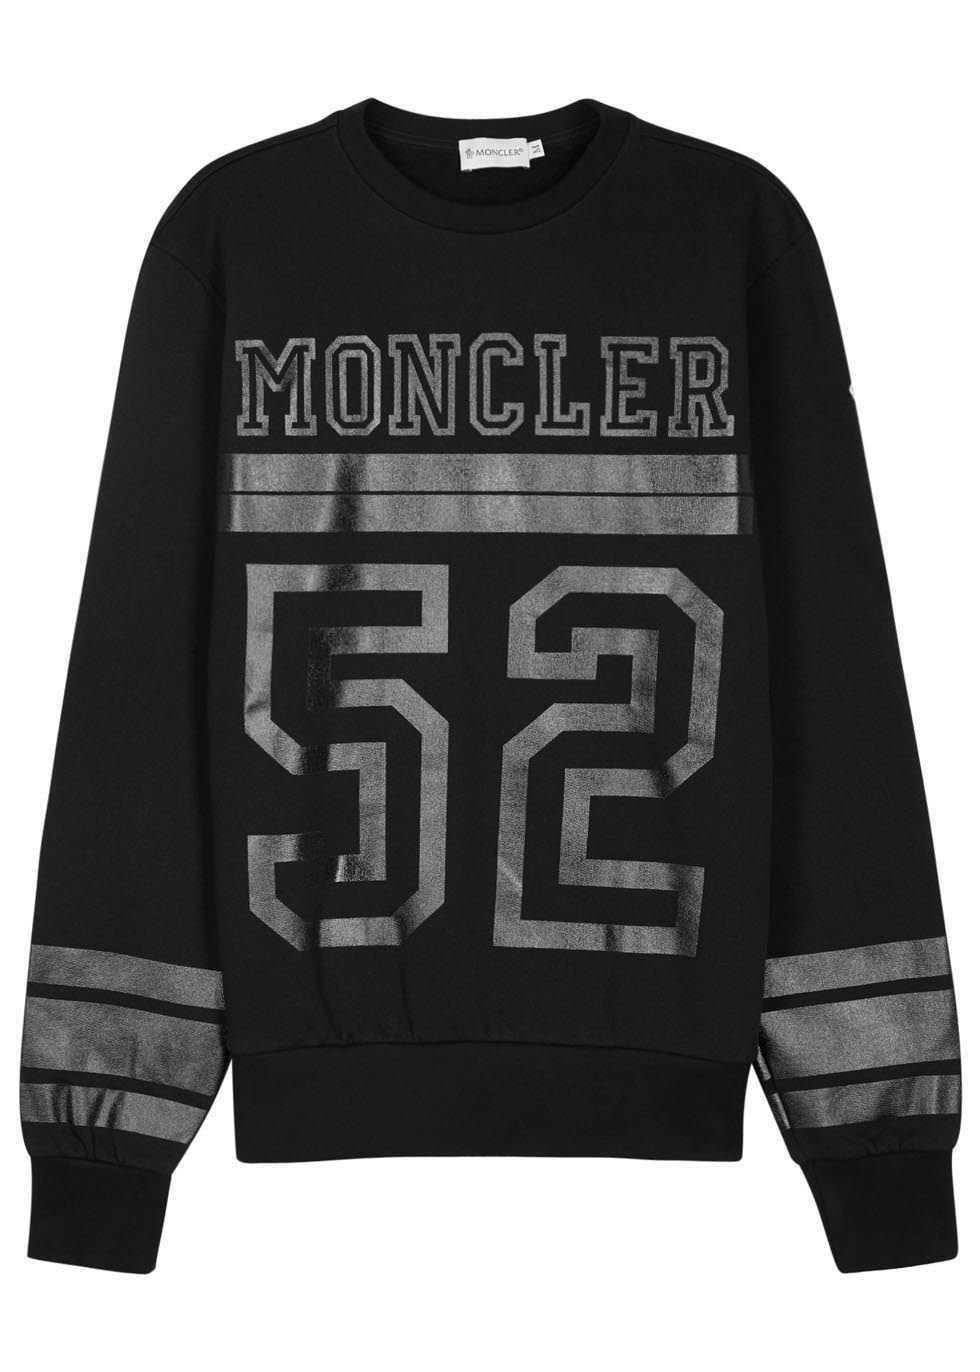 Moncler 52 Black Cotton Sweatshirt for Men - Lyst